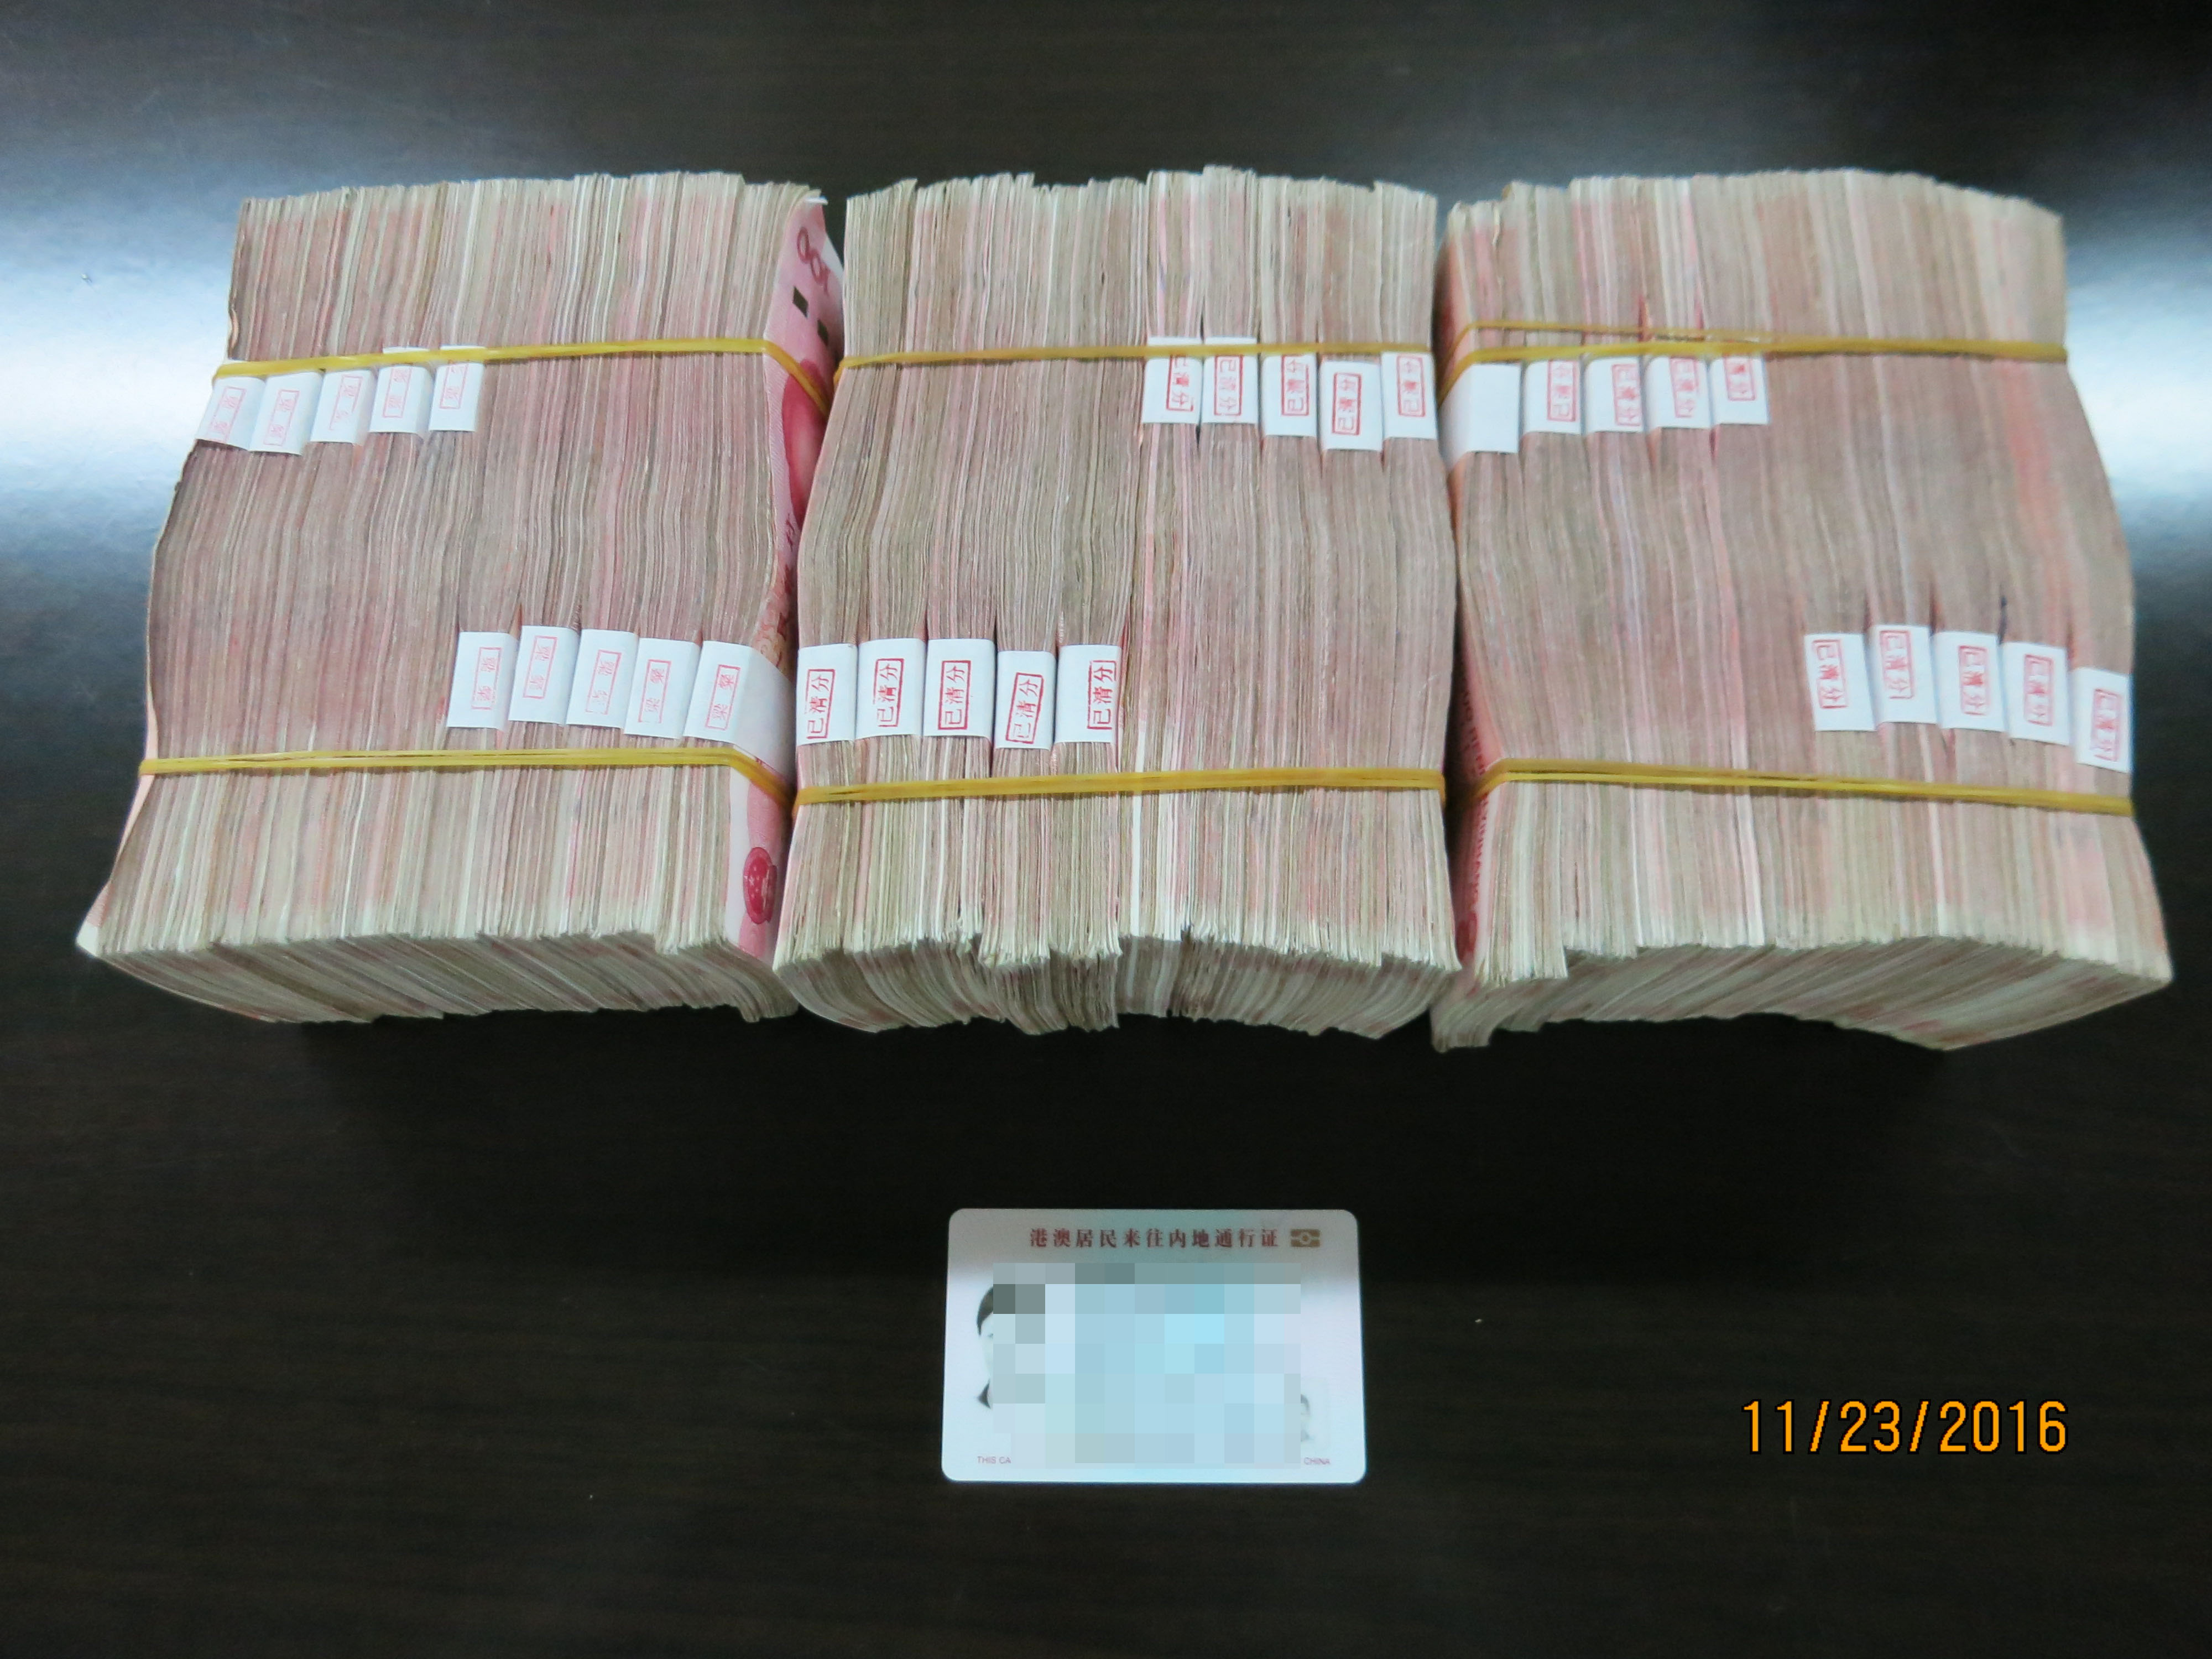 11月23日,罗湖海关查获旅客违规走私携带30万人民币案件